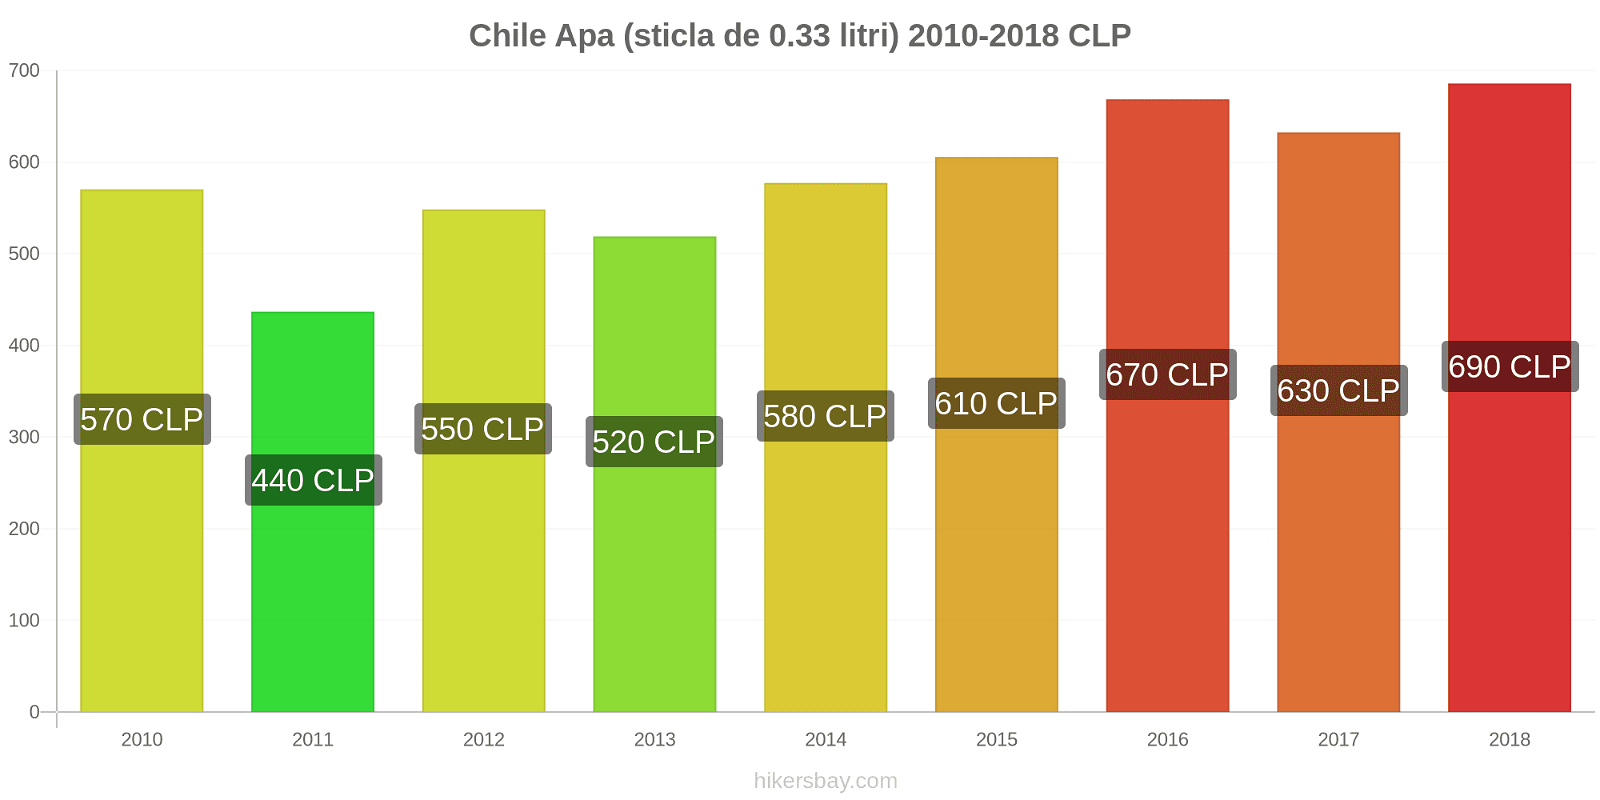 Chile schimbări de prețuri Apa (sticla de 0.33 litri) hikersbay.com